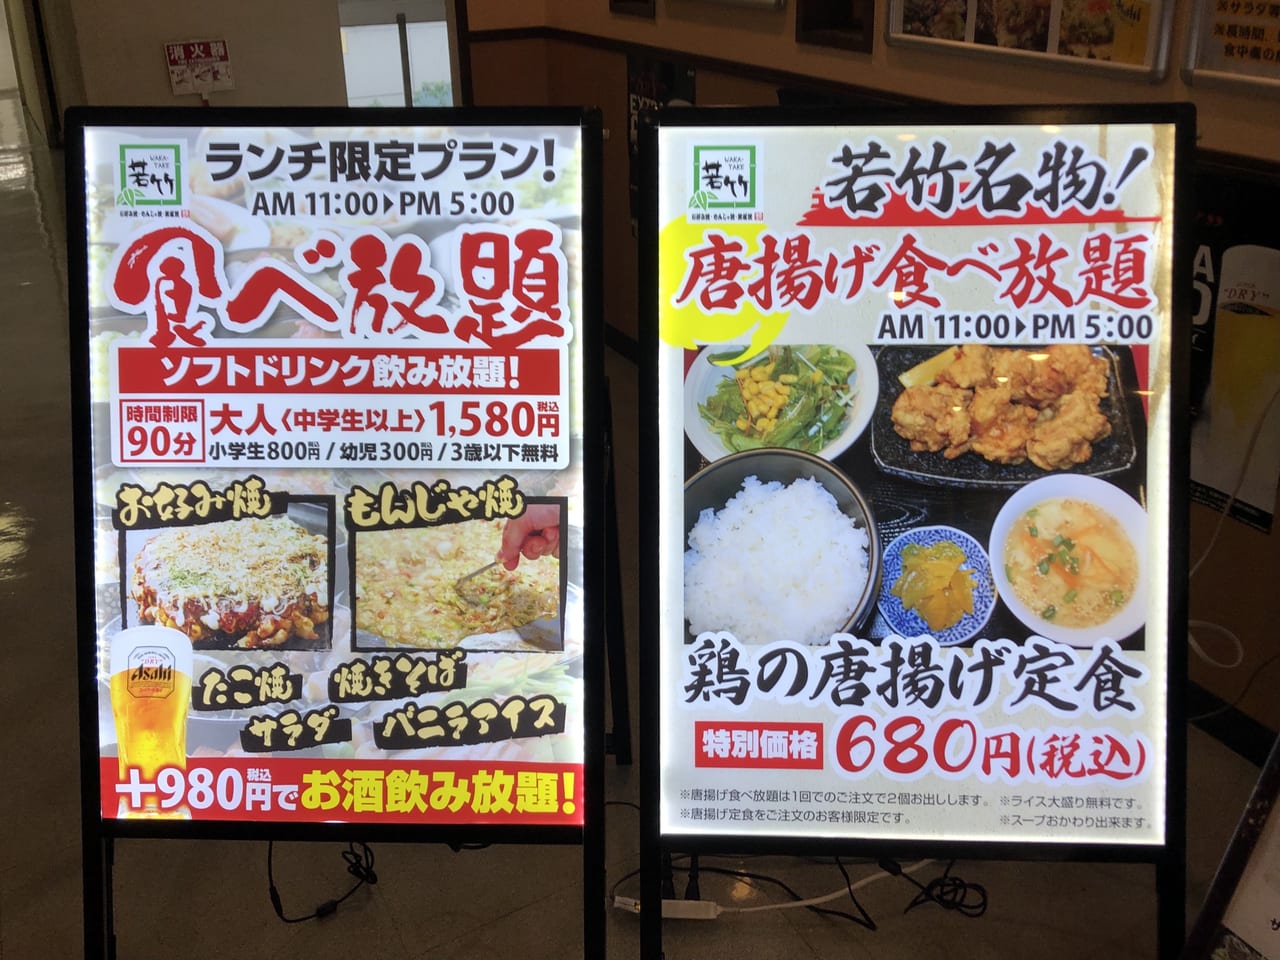 藤沢市 680円で鶏の唐揚げ食べ放題 お好み焼き食べ放題のお店 若竹 のランチを紹介します 号外net 藤沢市